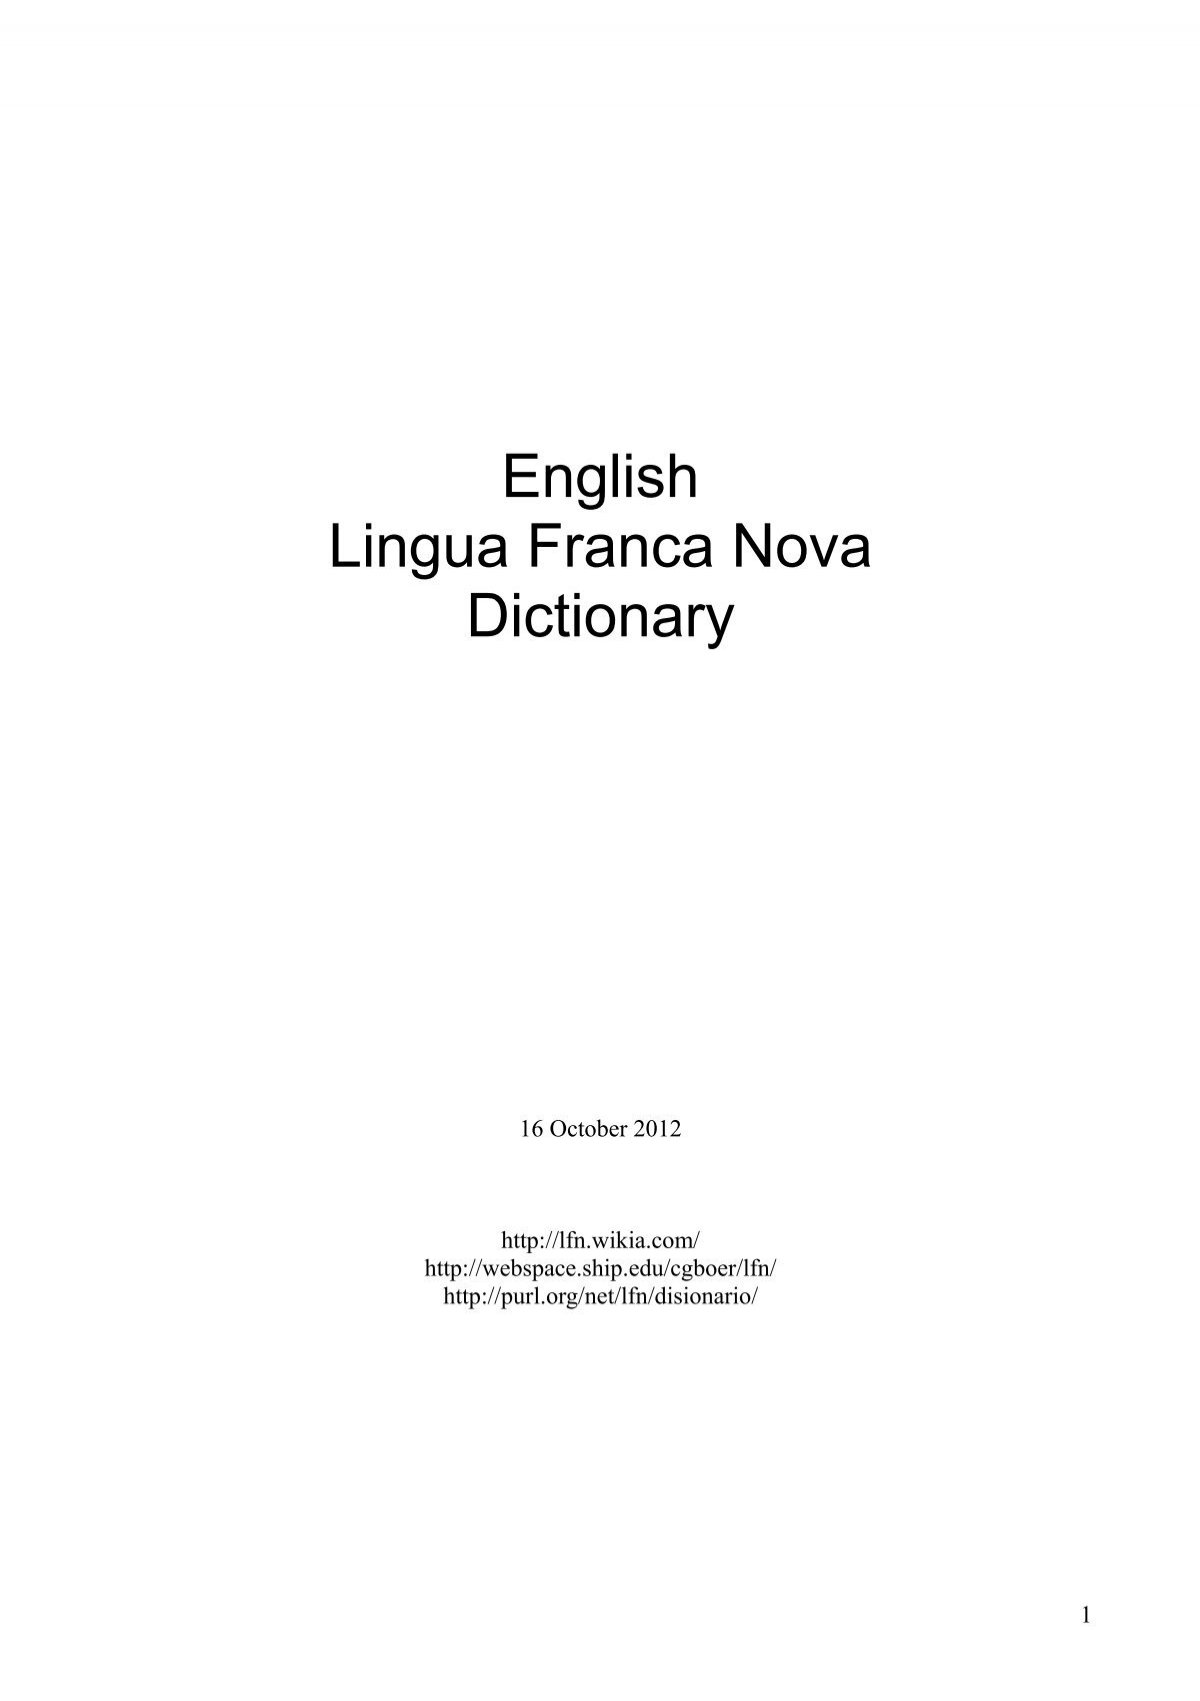 English Lingua Franca Nova Dictionary